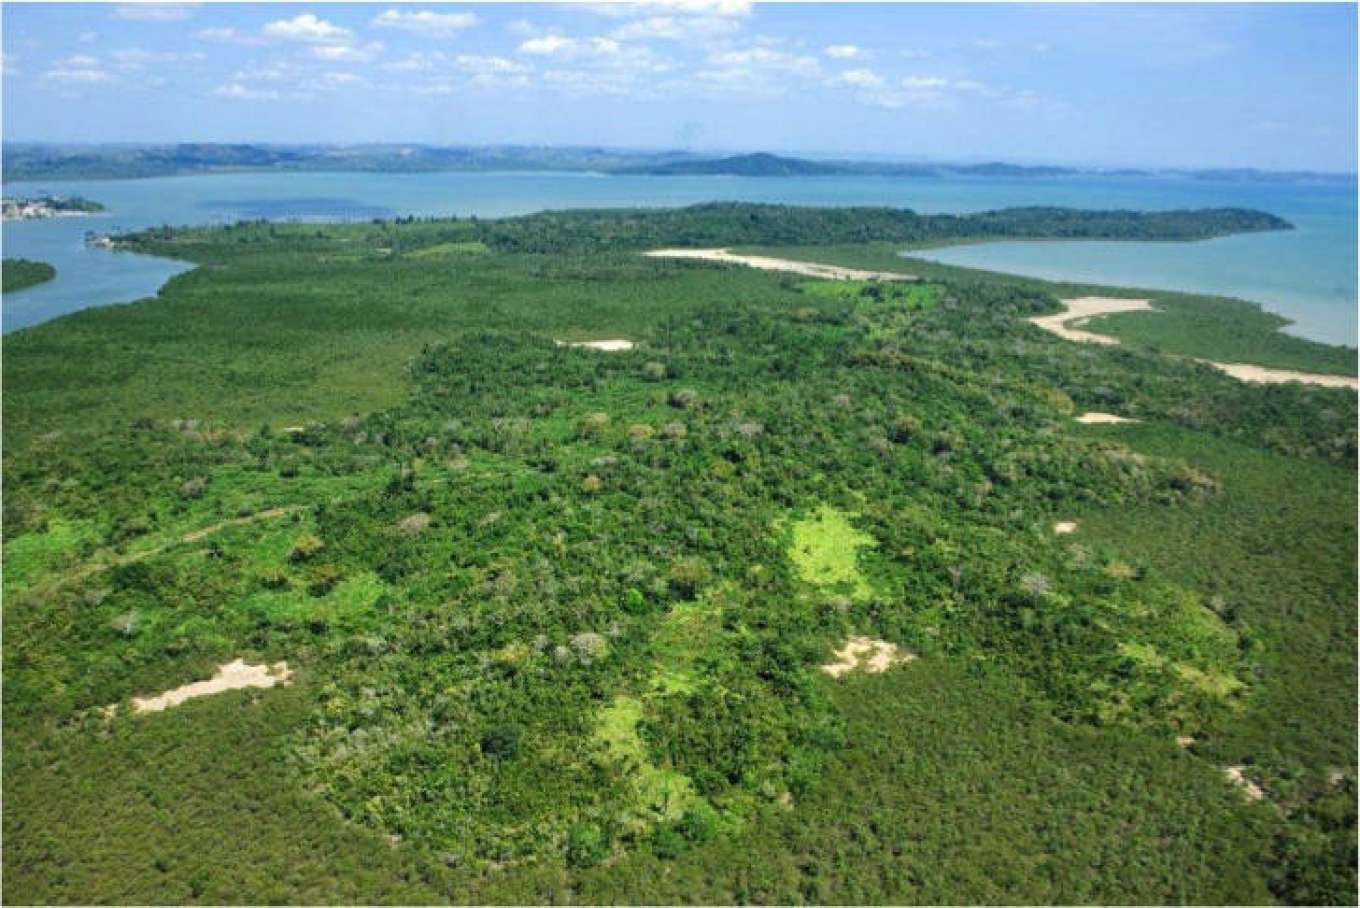 Ilha de Pioca - Brazil, South America - Private Islands for Sale